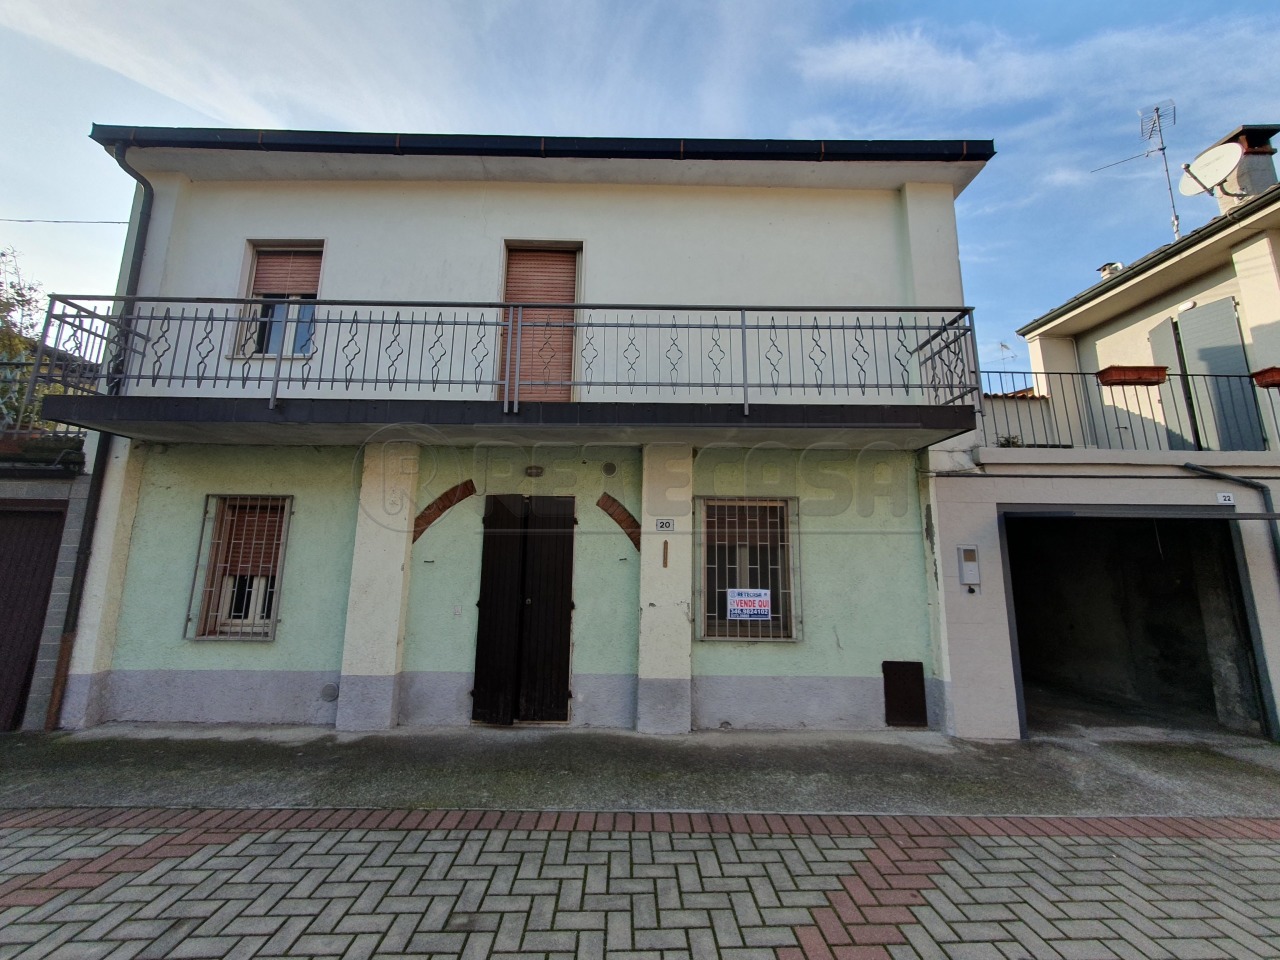 Rustico / Casale in vendita a Cremona, 5 locali, prezzo € 62.900 | PortaleAgenzieImmobiliari.it